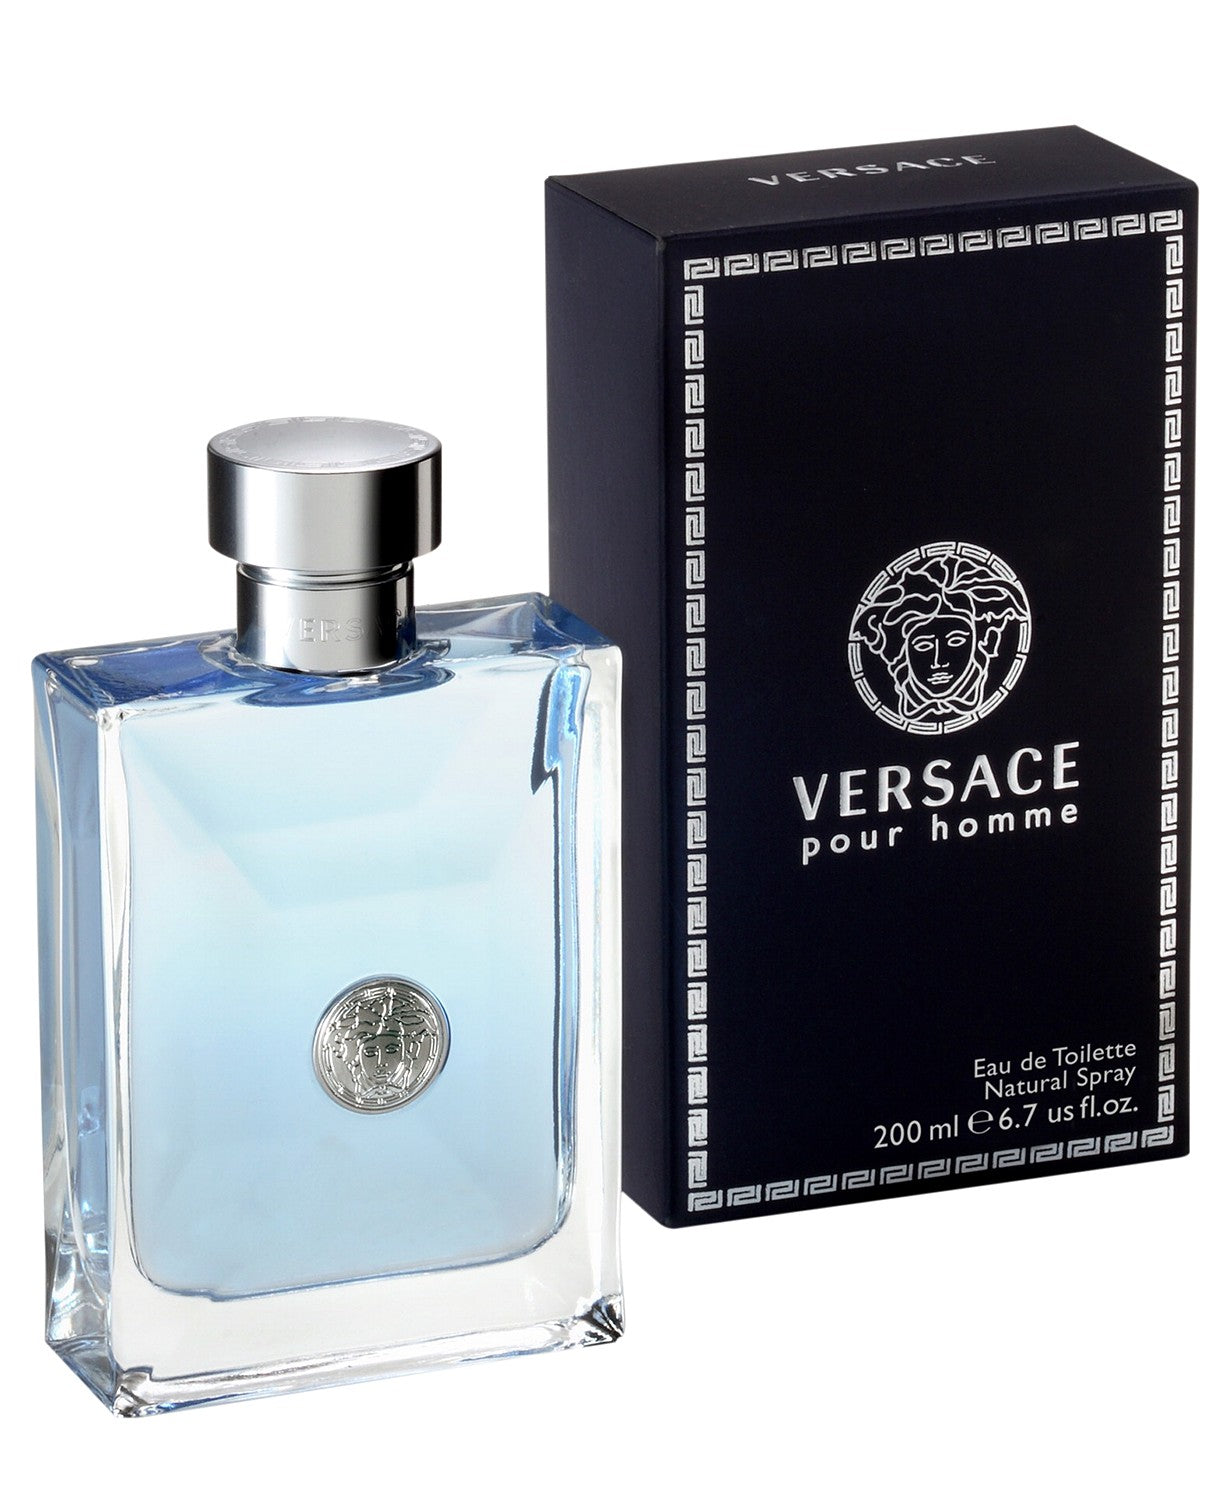 Versace Men's Pour Homme Eau de Toilette Spray, 6.7 oz.